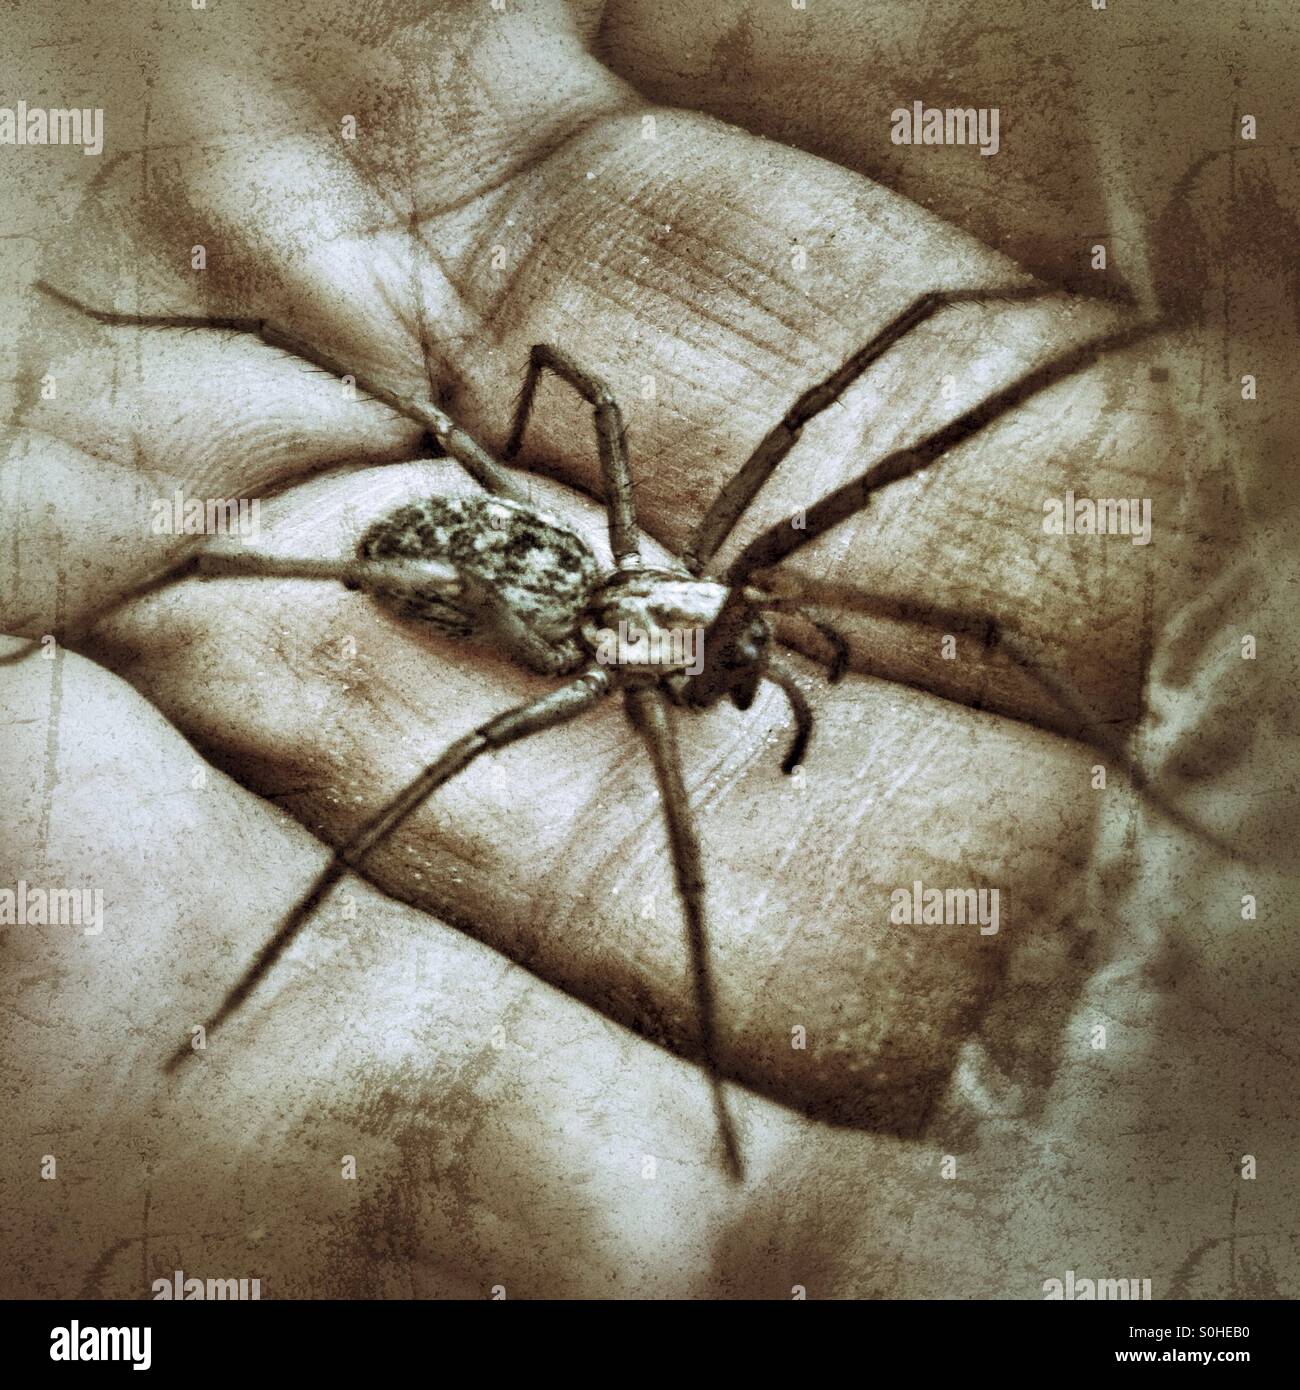 Trichter-Web Weaver Spinne sitzt auf einem Mans Hand Stockfoto